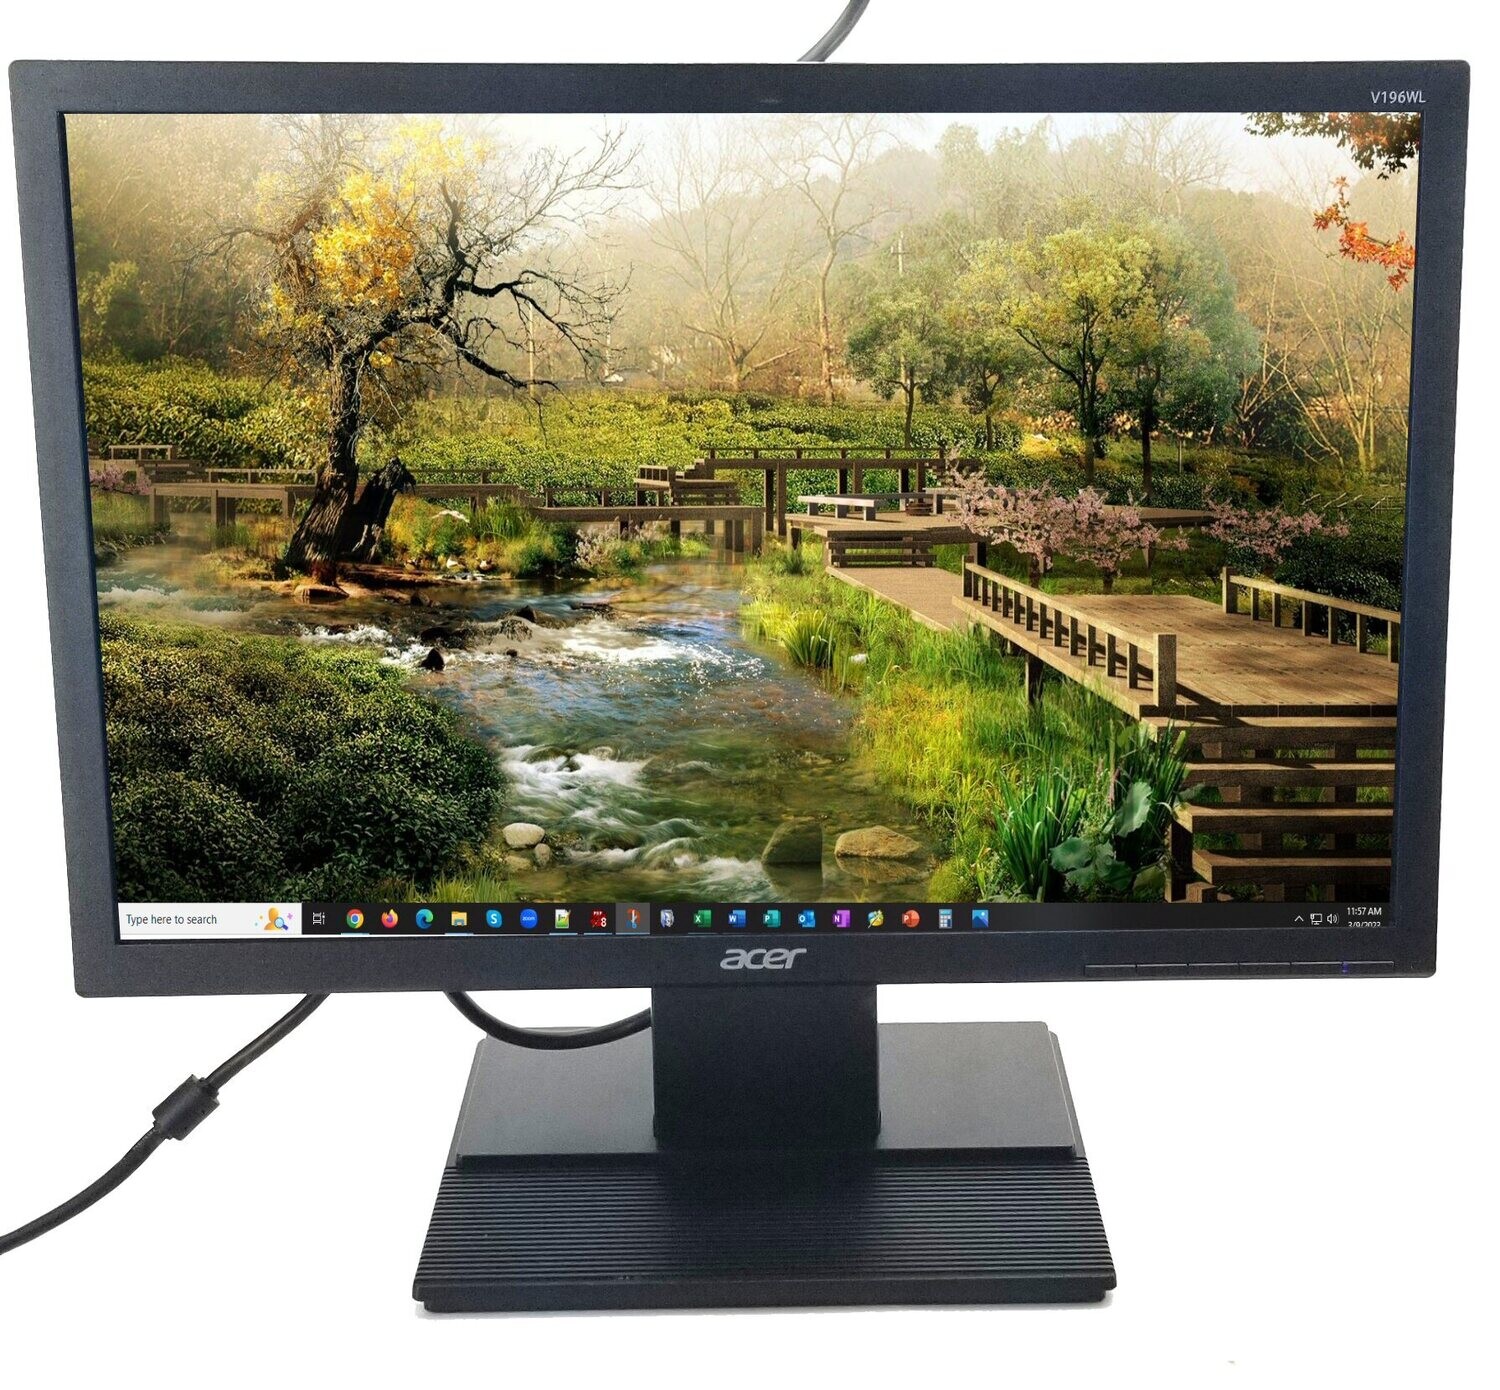 品)Acer V196WL bm - LED monitor - 19 - 1440 x 900 - 250 cd/m2 - 5